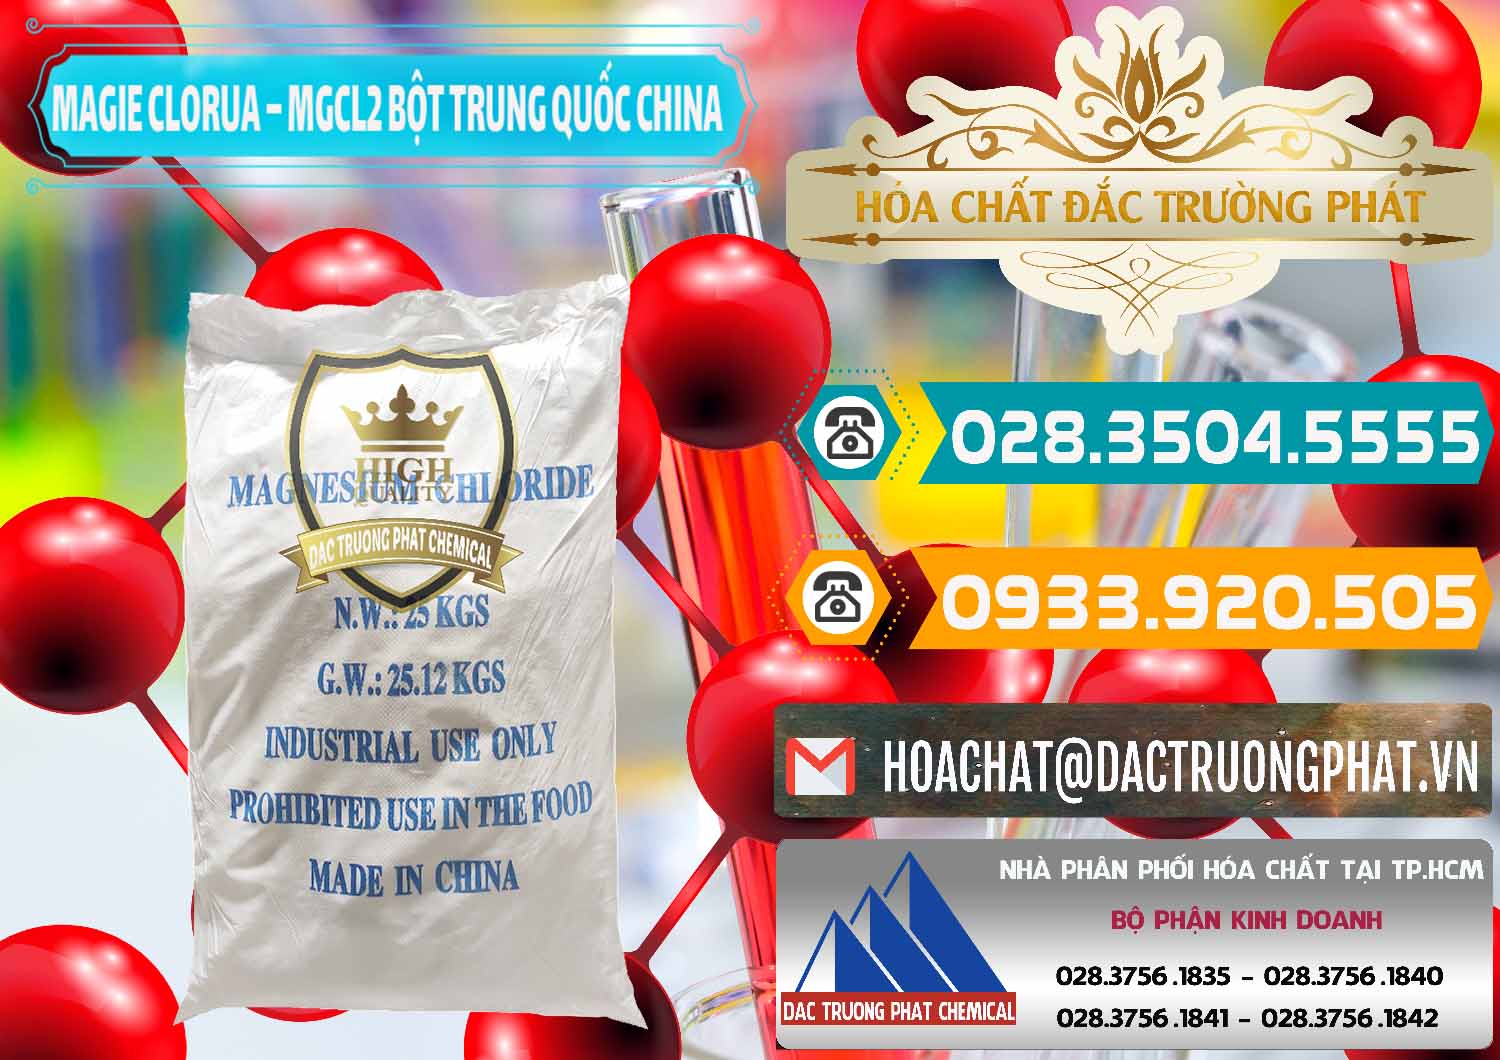 Chuyên phân phối và bán Magie Clorua – MGCL2 96% Dạng Bột Bao Chữ Xanh Trung Quốc China - 0207 - Đơn vị chuyên kinh doanh _ cung cấp hóa chất tại TP.HCM - congtyhoachat.vn